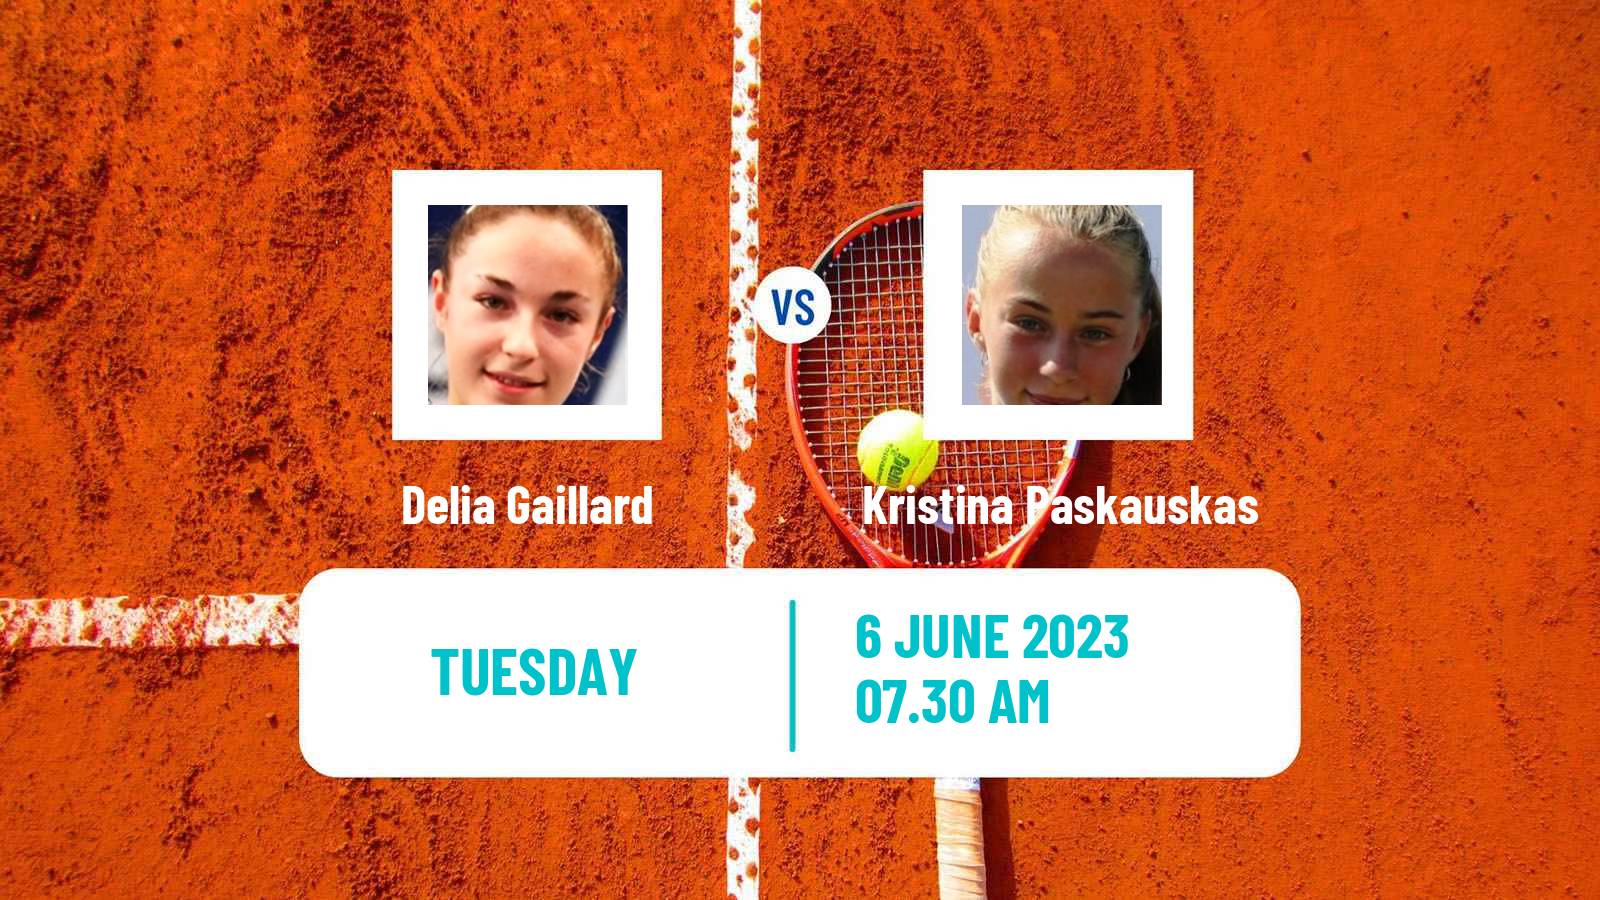 Tennis ITF W15 Monastir 18 Women 2023 Delia Gaillard - Kristina Paskauskas